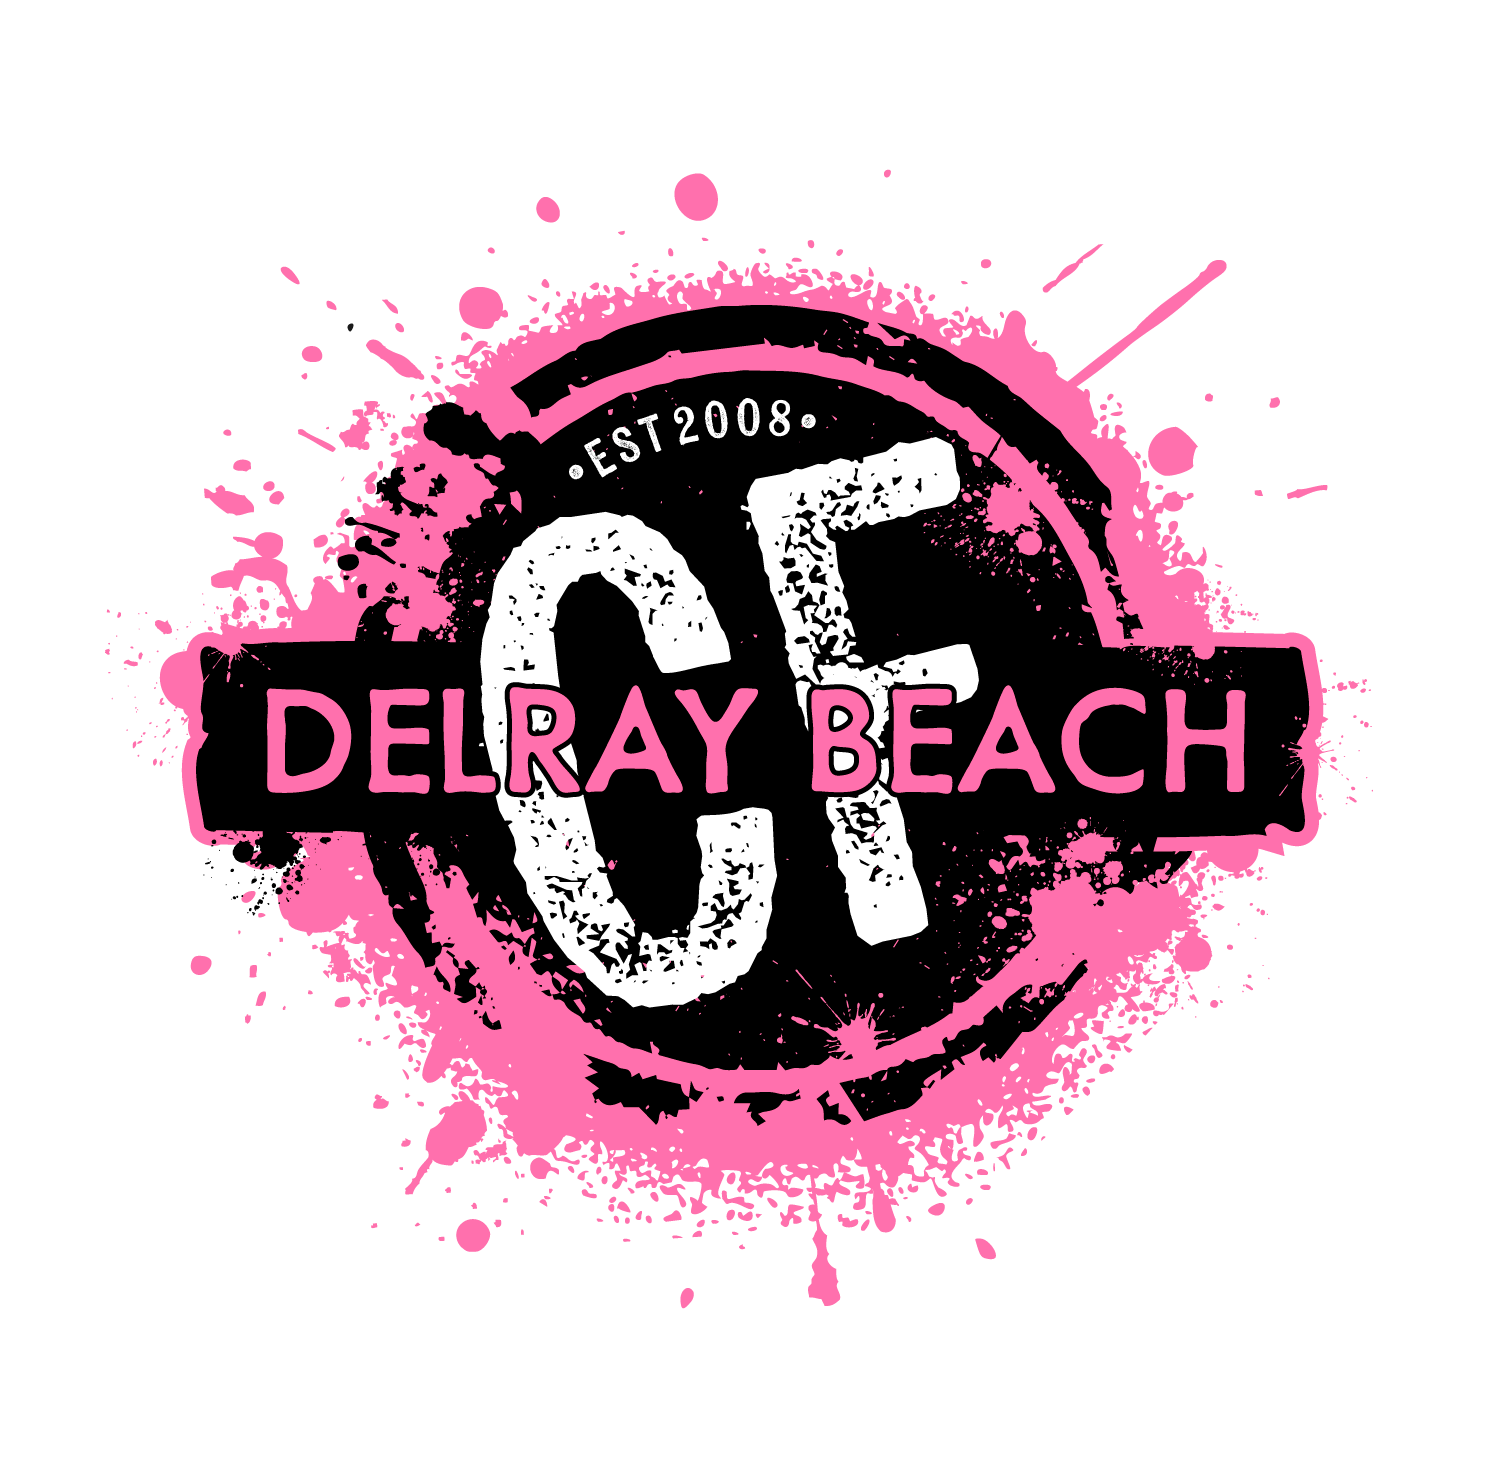 CrossFit Delray Beach